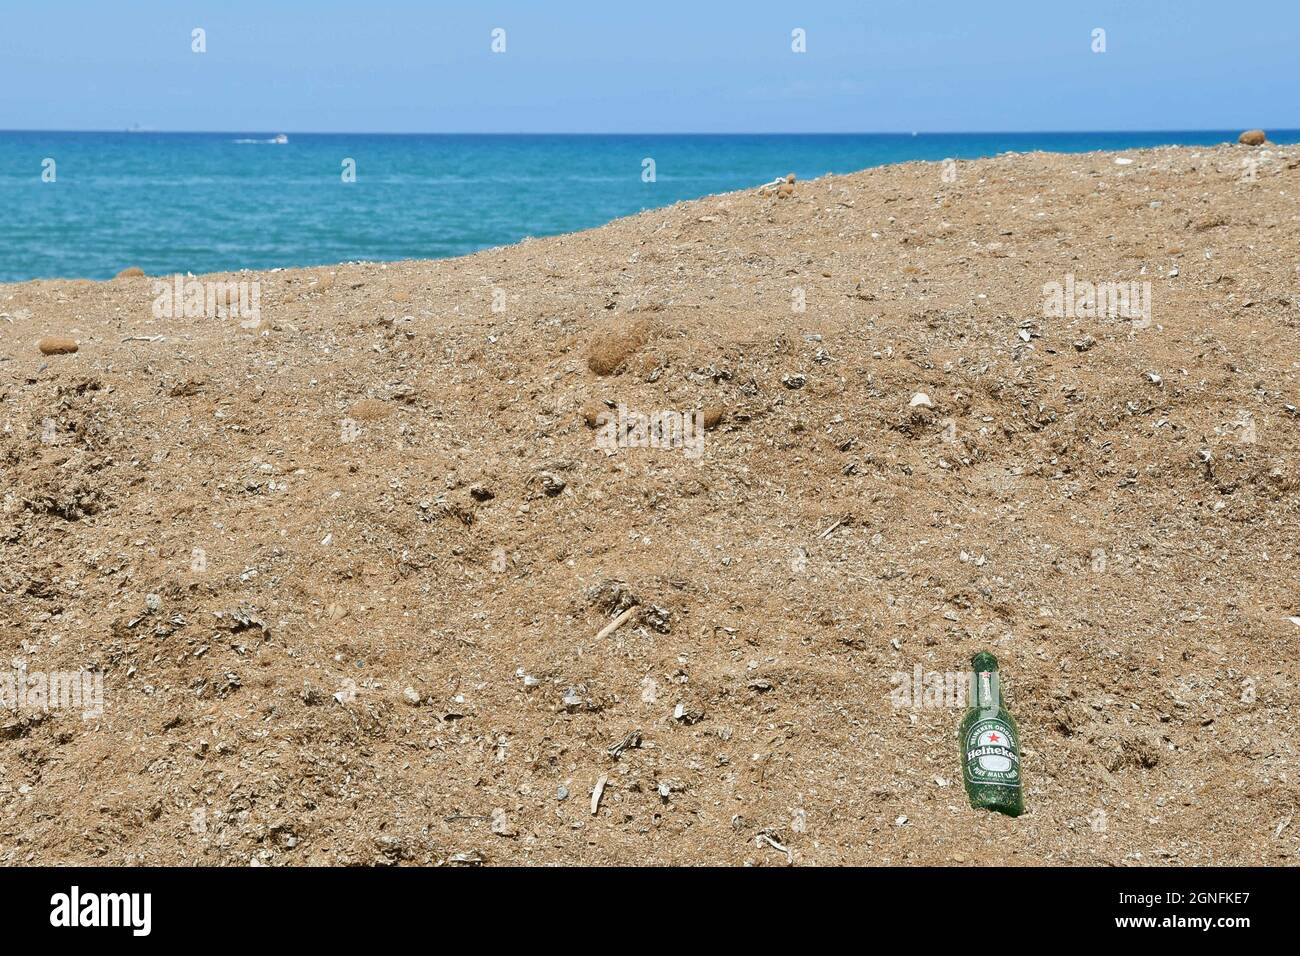 Una bottiglia di birra vuota abbandonata sulla spiaggia sabbiosa con il mare sullo sfondo, tema ambientale Concept, San Vincenzo, Toscana, Italia Foto Stock